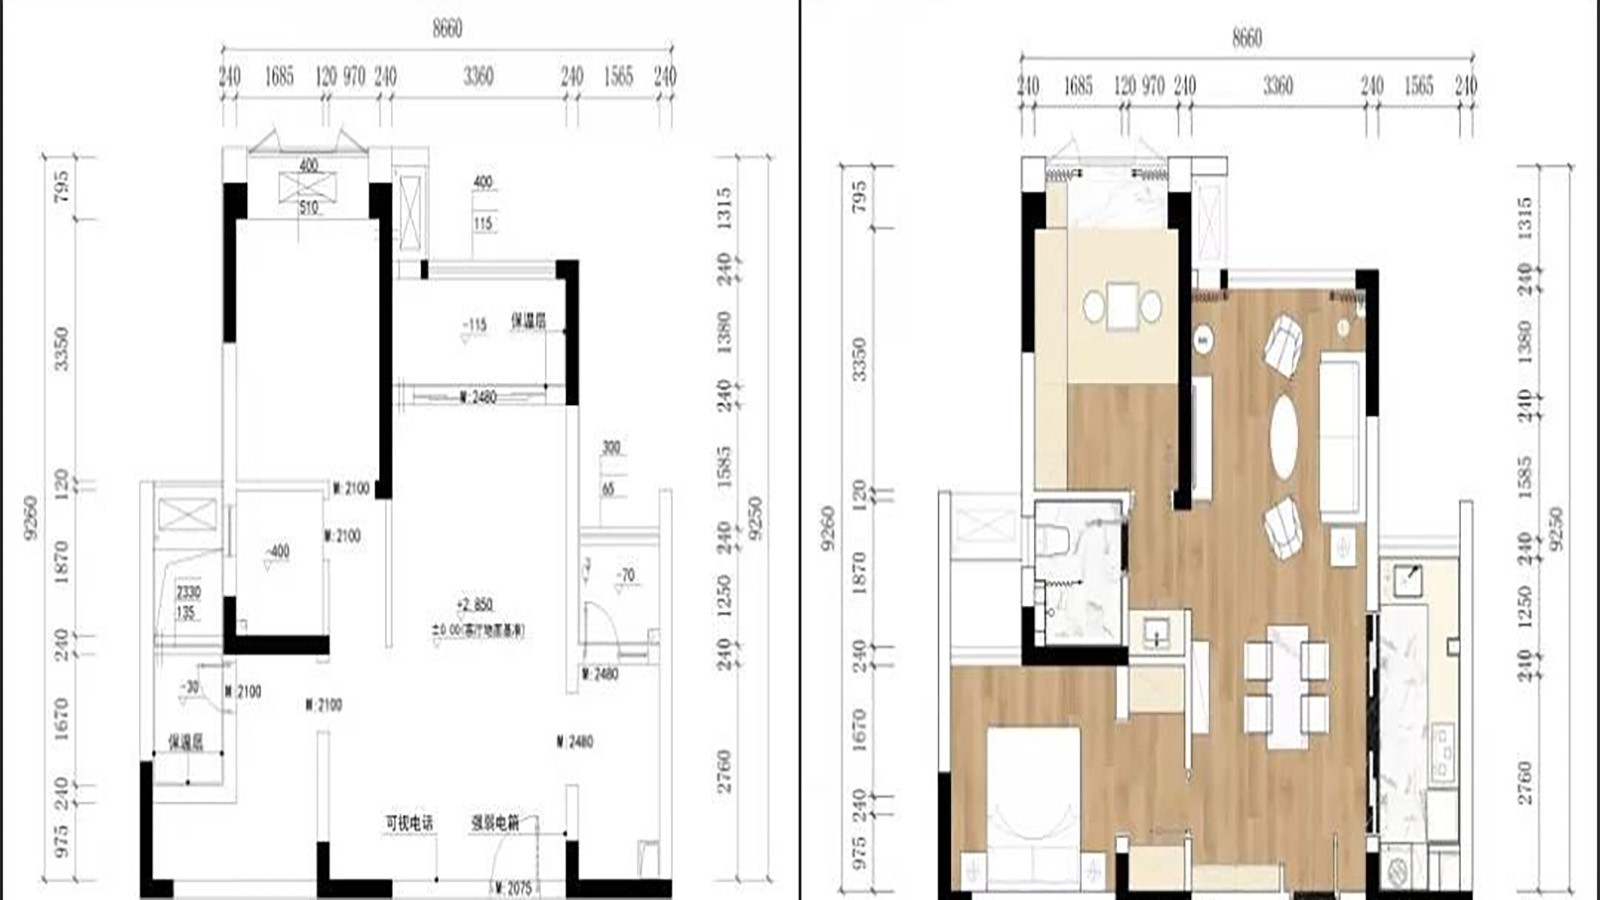 98现代两房装修效果图,打造有格调的家装修案例效果图-美广网